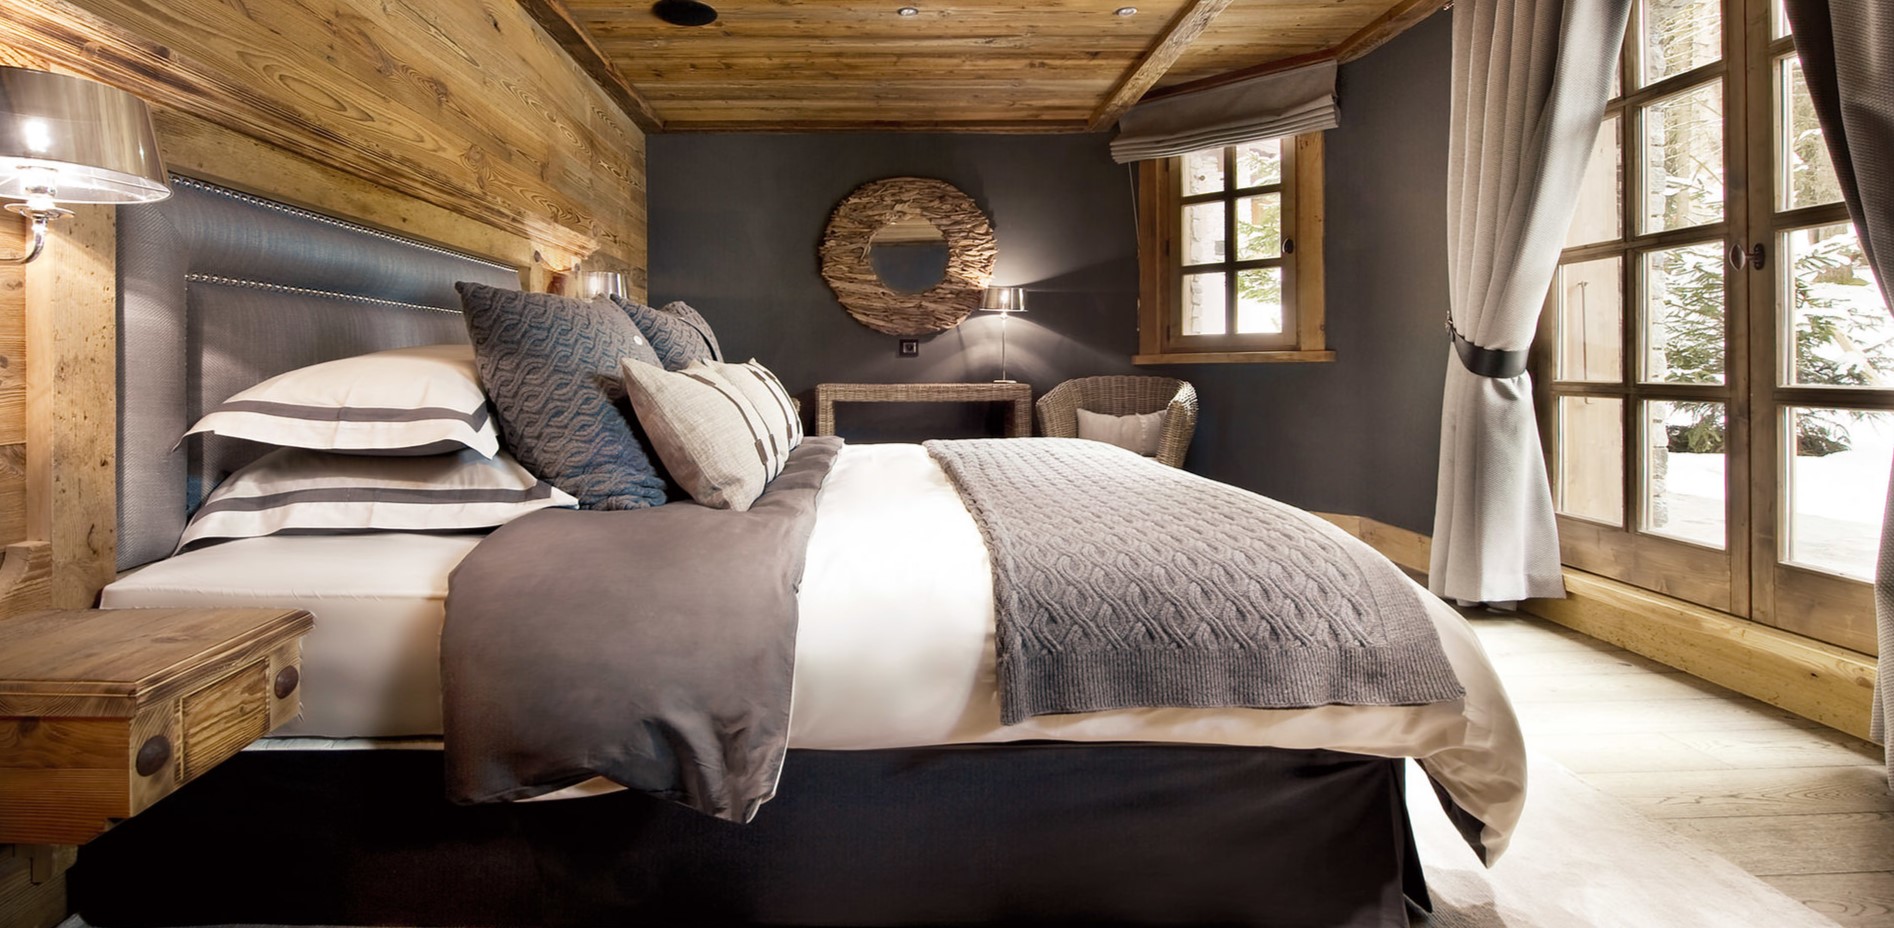 Кровать можно декорировать покрывалами и подушками